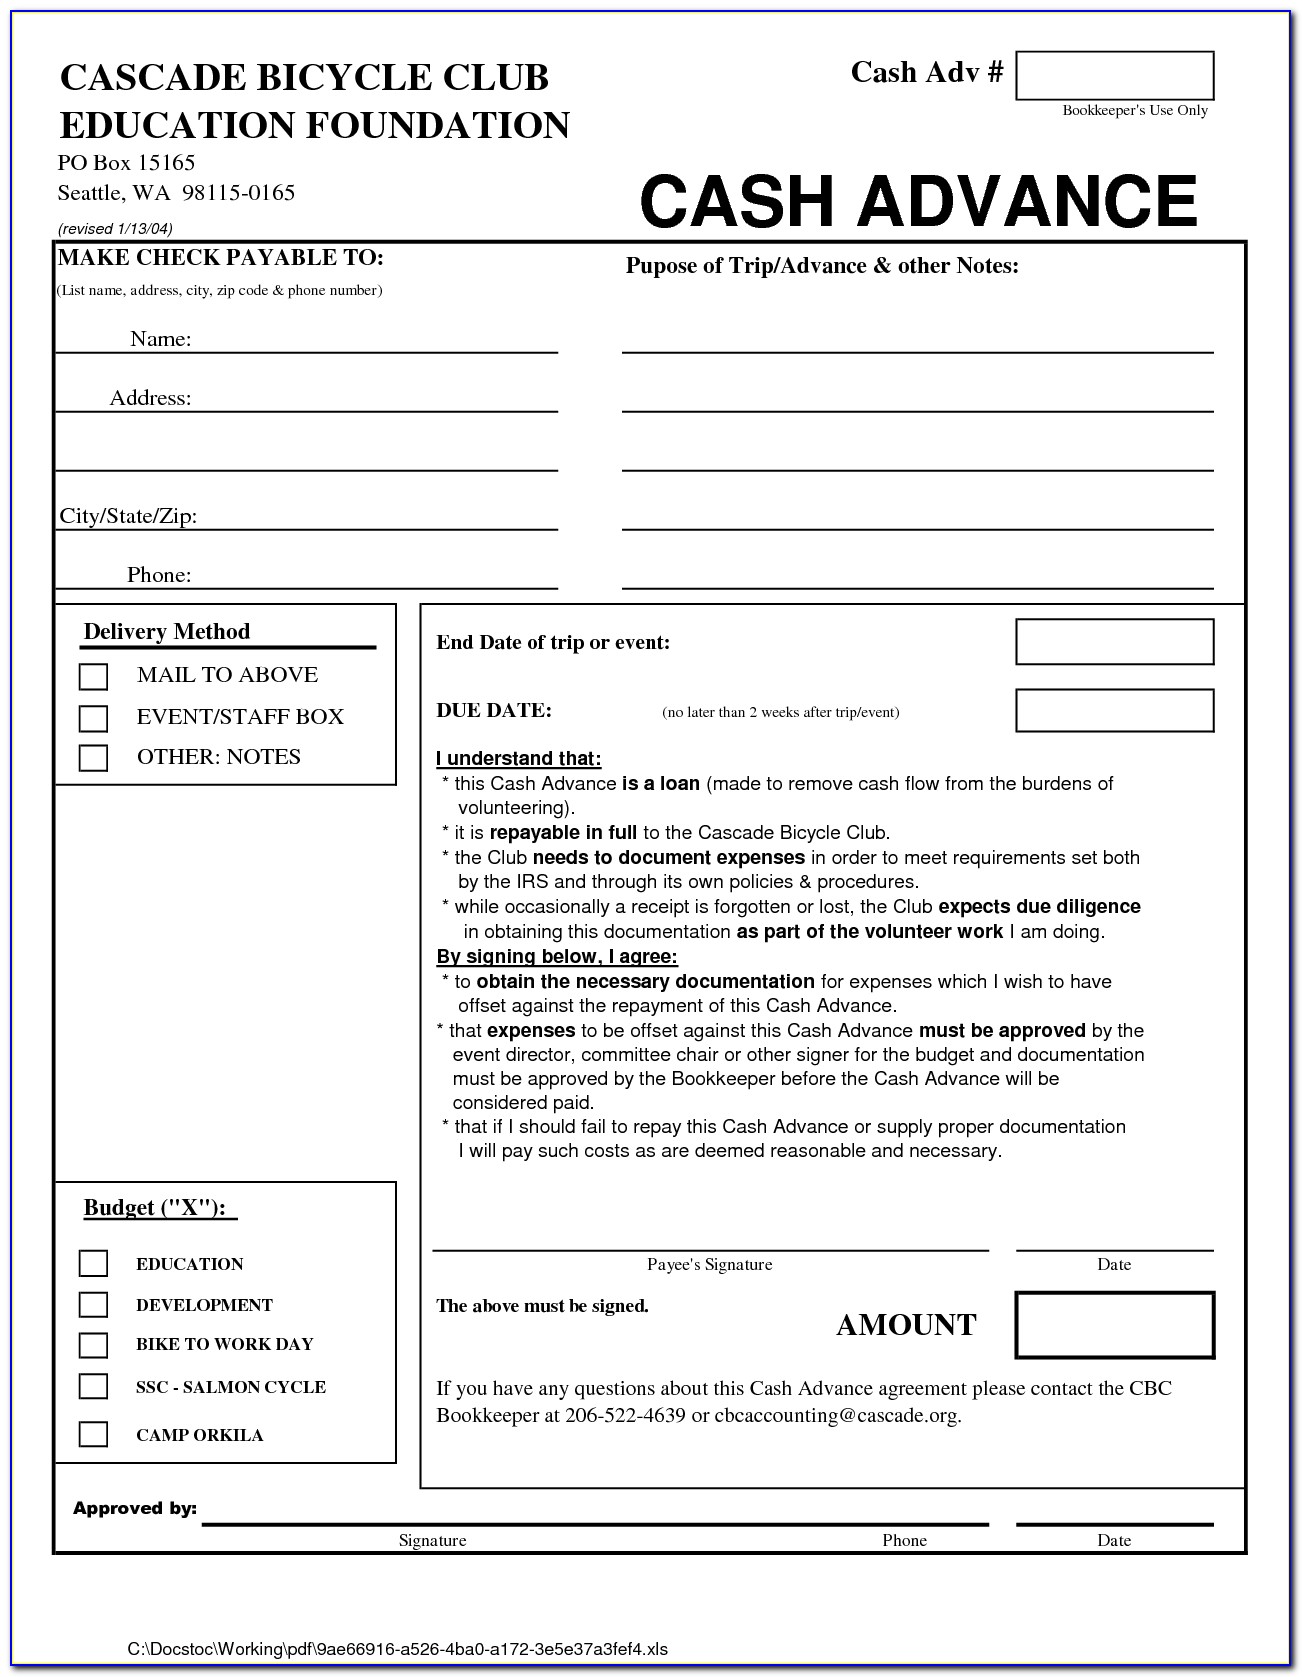 Cash Advance Agreement Form